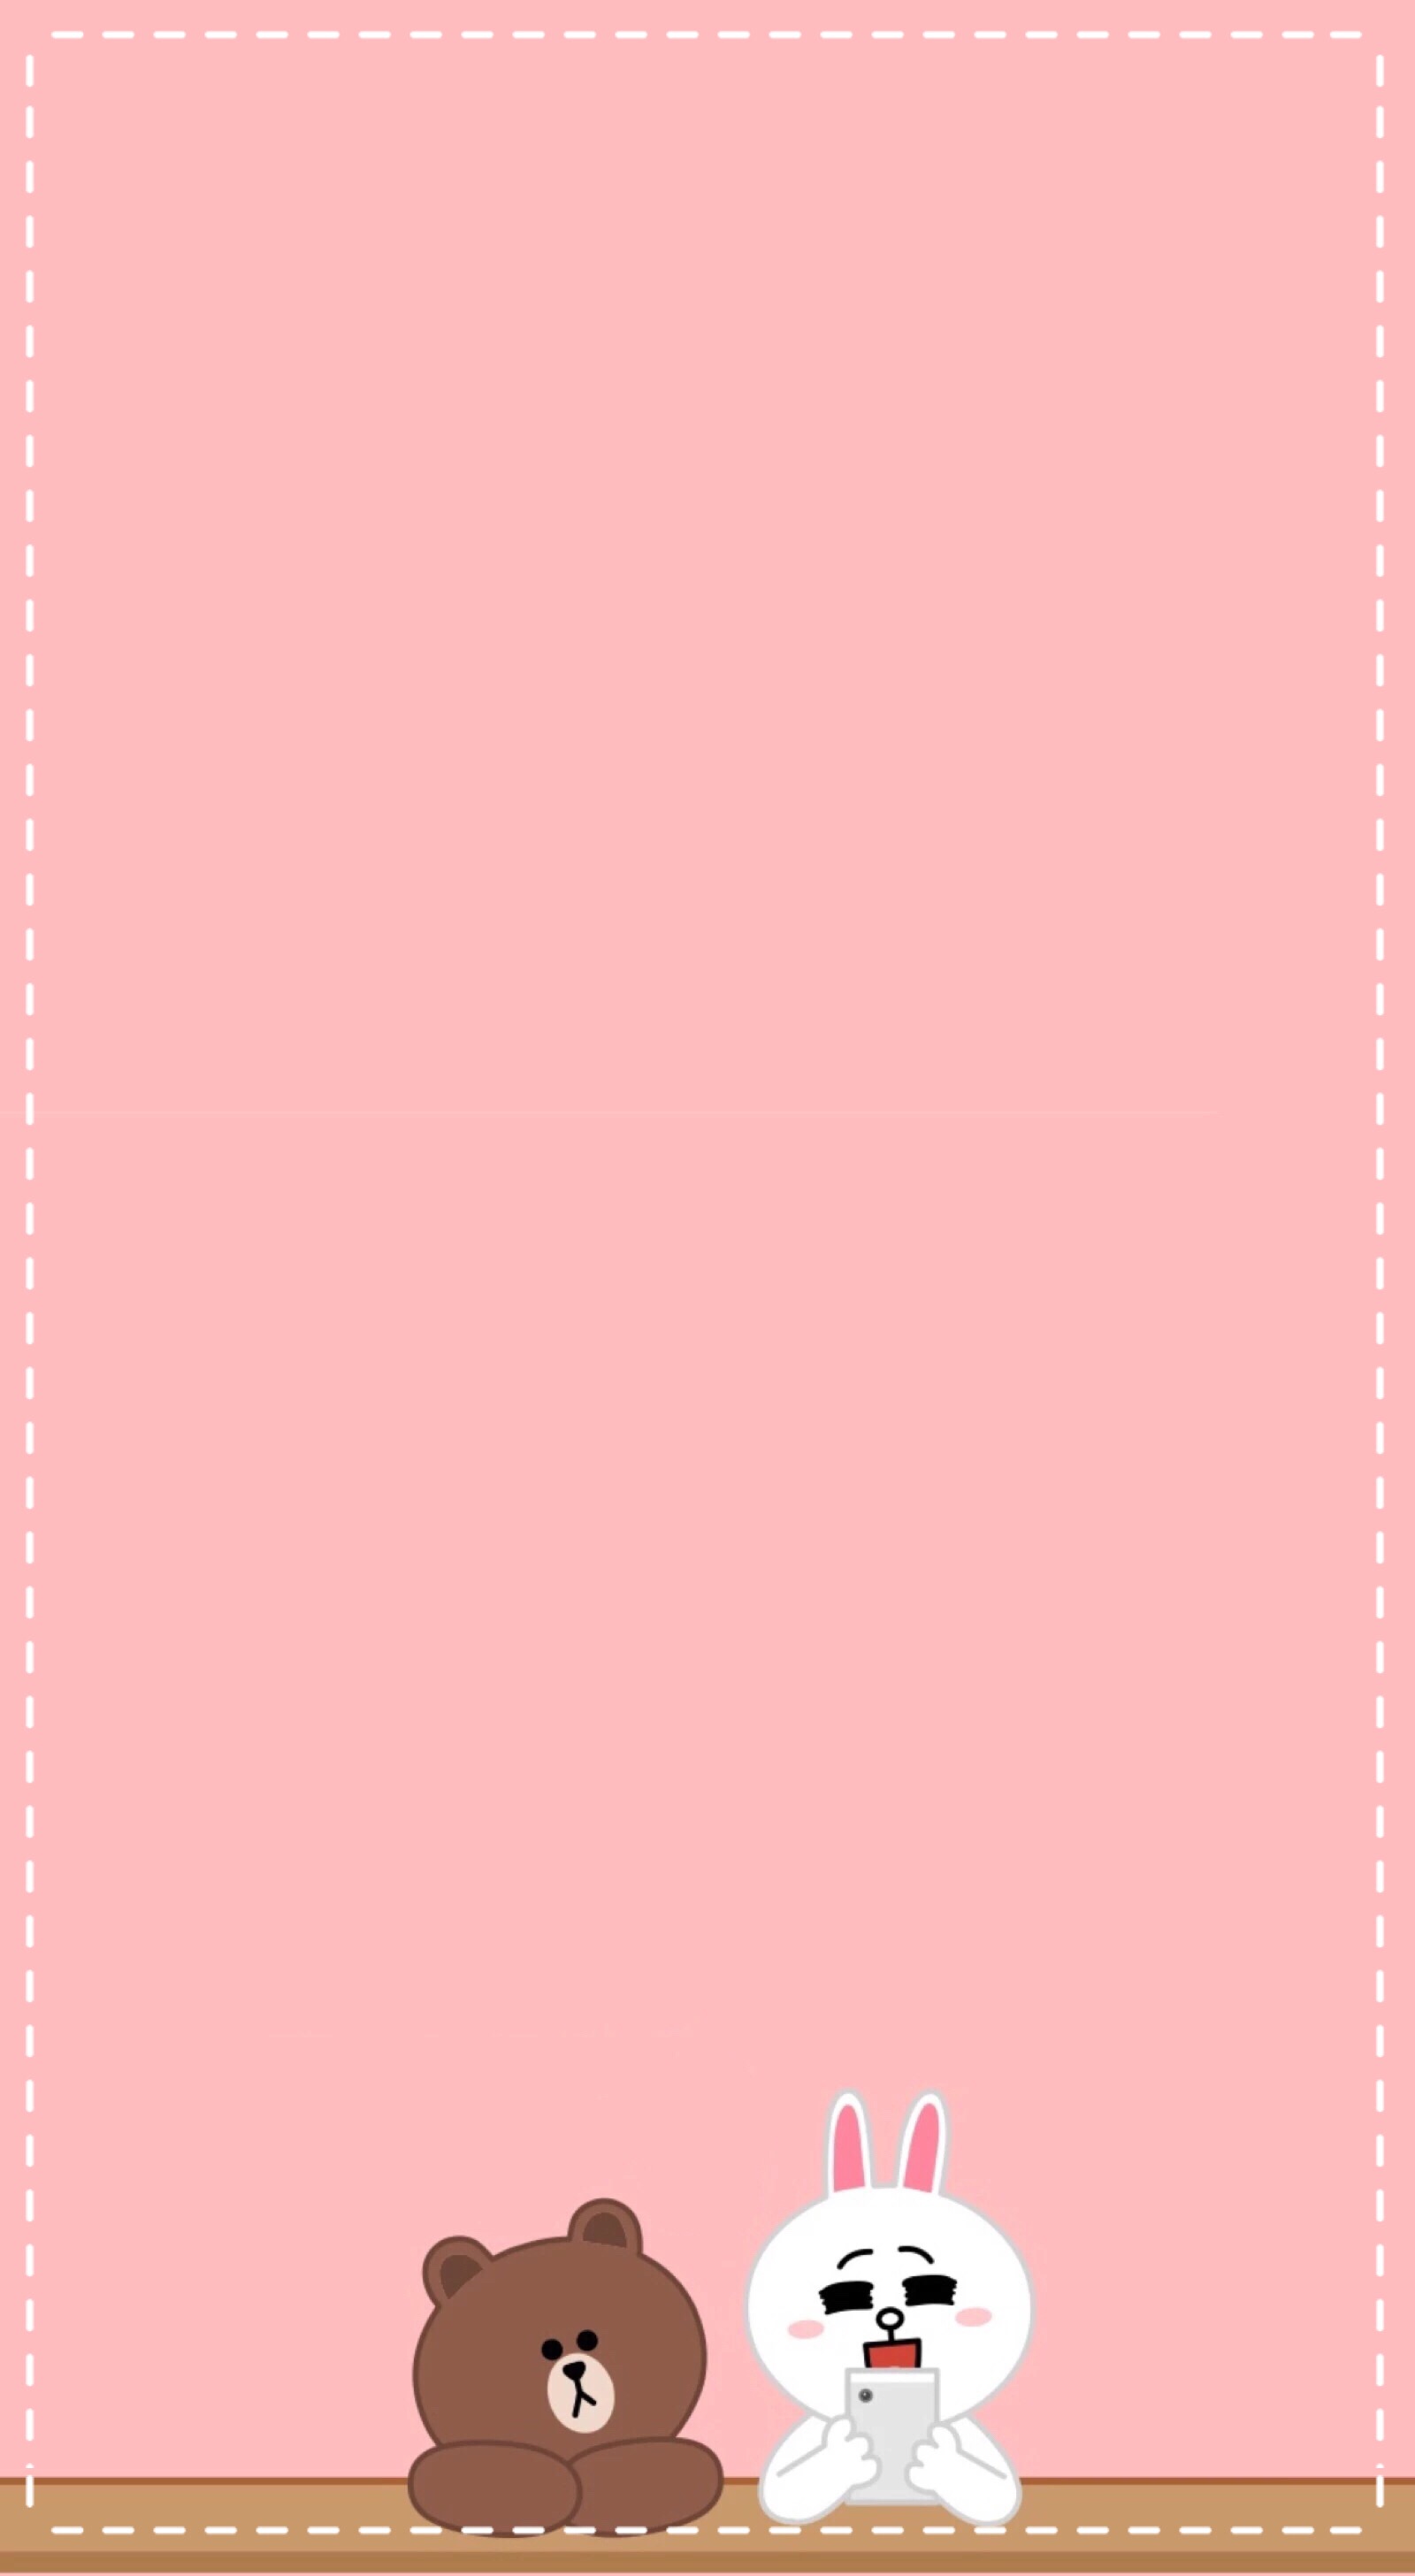 粉色壁纸纯色全粉图片